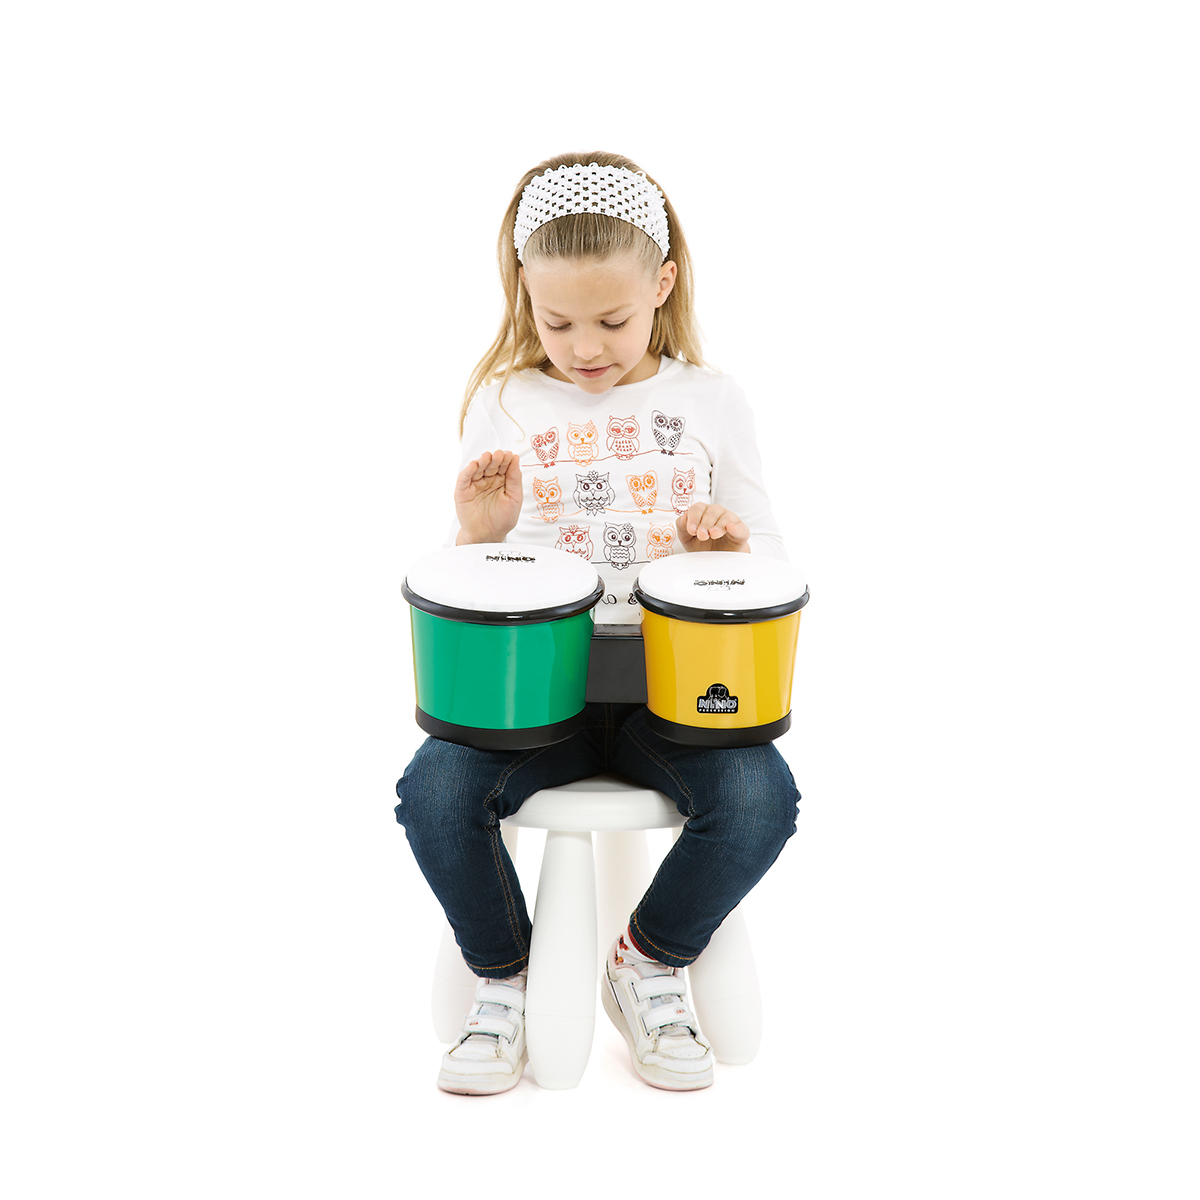 大人も欲しくなる 本格ブランドの音楽系おもちゃで脳と感性を刺激 Fasu ファス